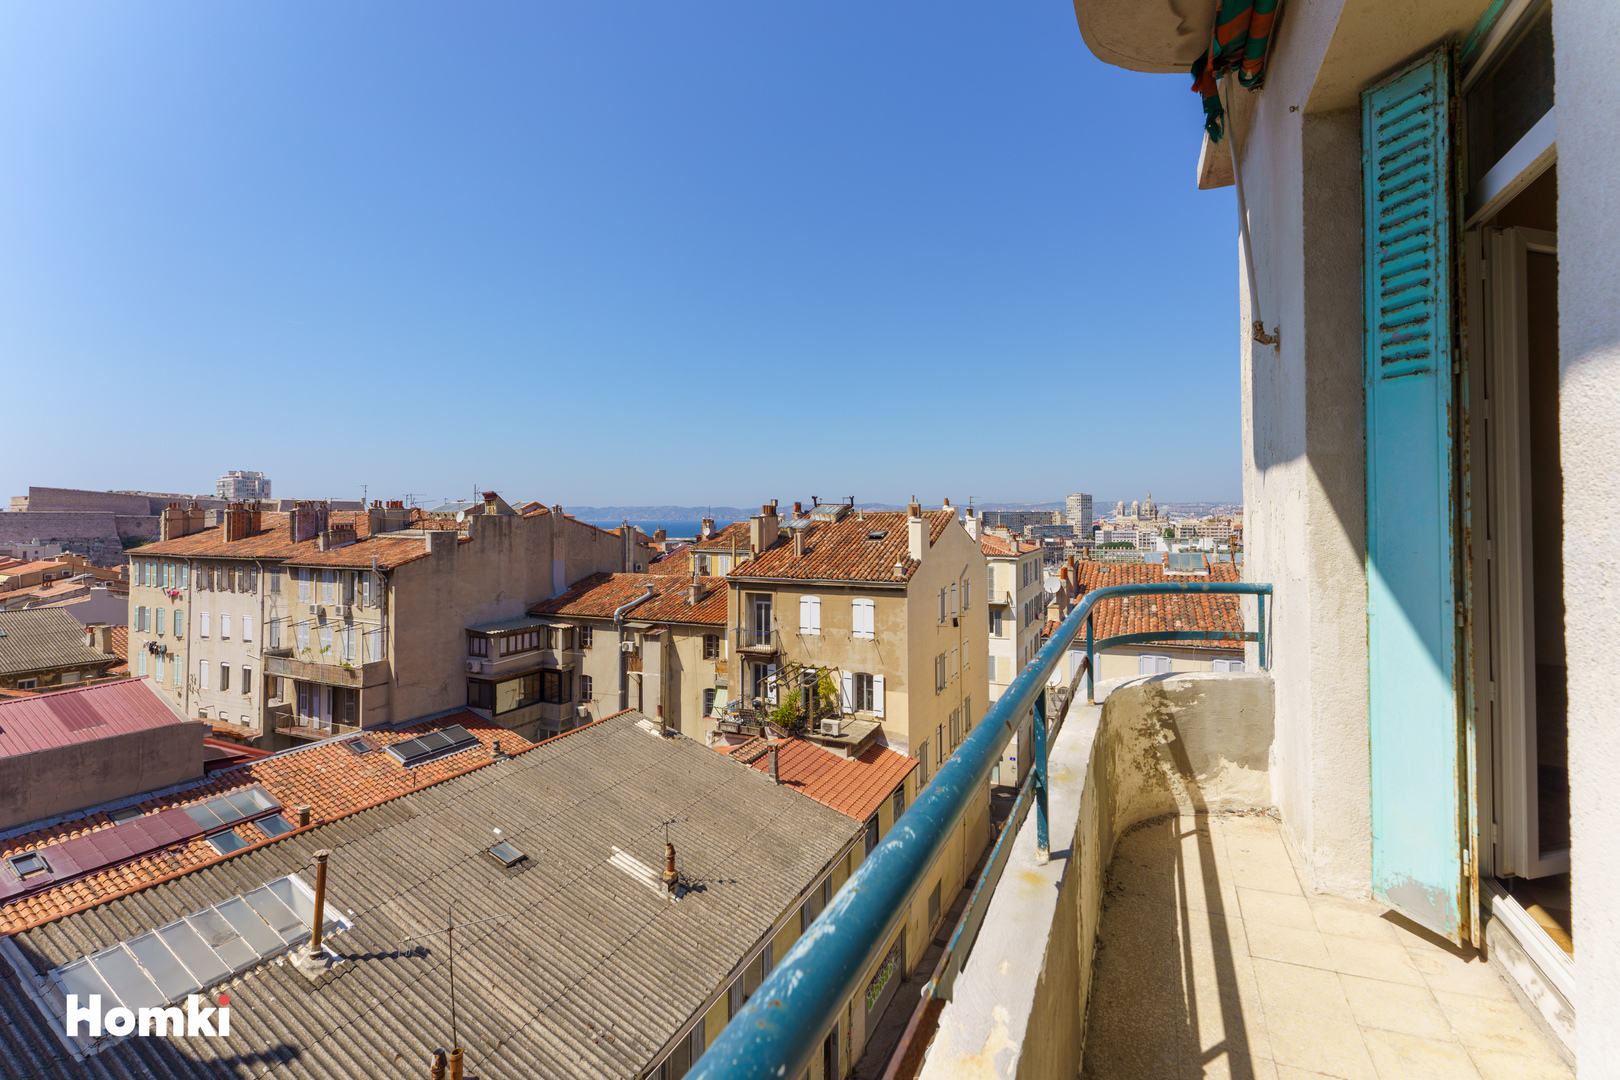 Homki - Vente Appartement  de 49.0 m² à Marseille 13007